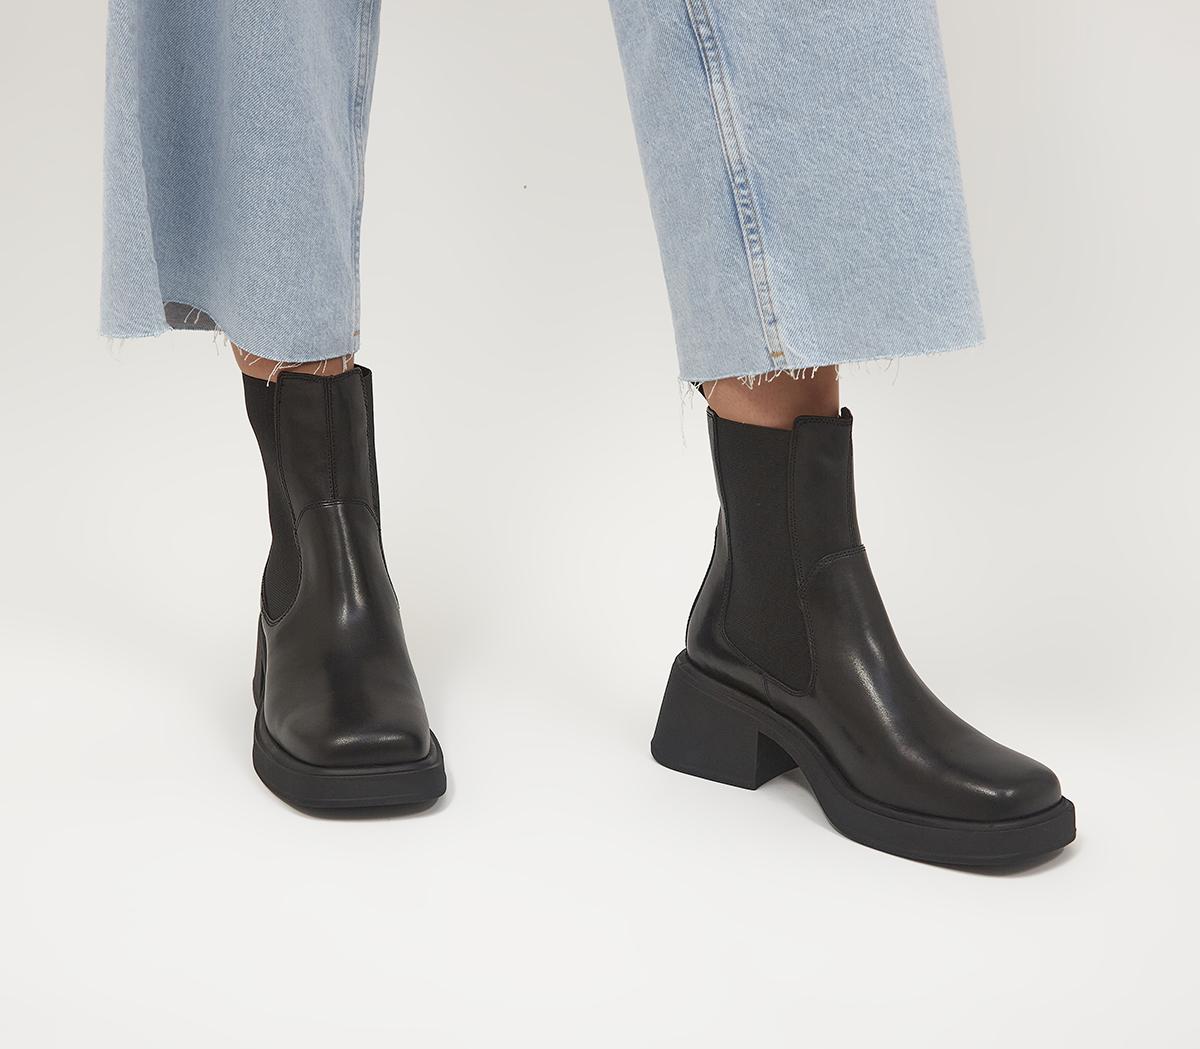 Vagabond Shoemakers Dorah Chelsea Boots Black - Women's Ankle Boots